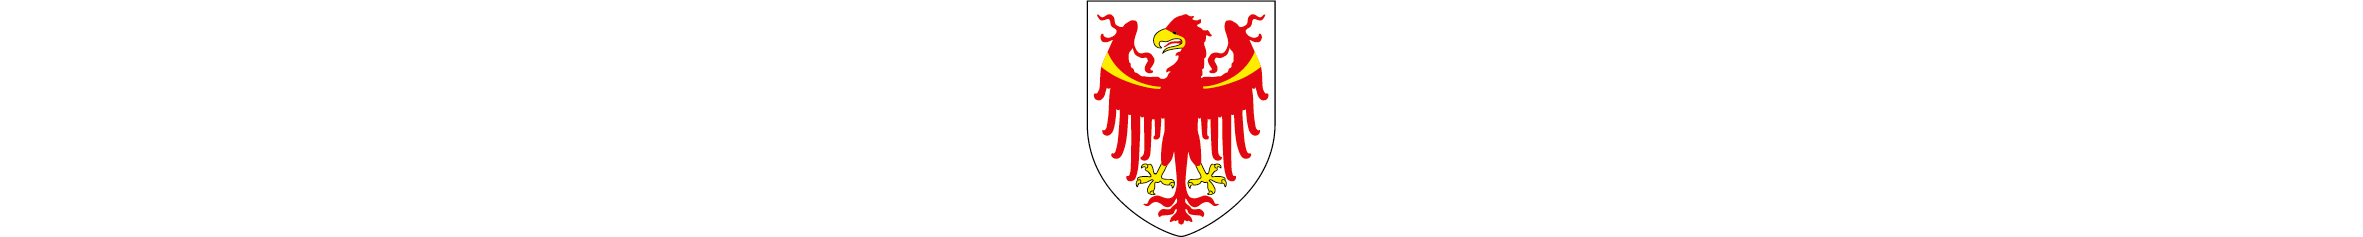 Provincia Autonoma di Bolzano - Politiche sociali